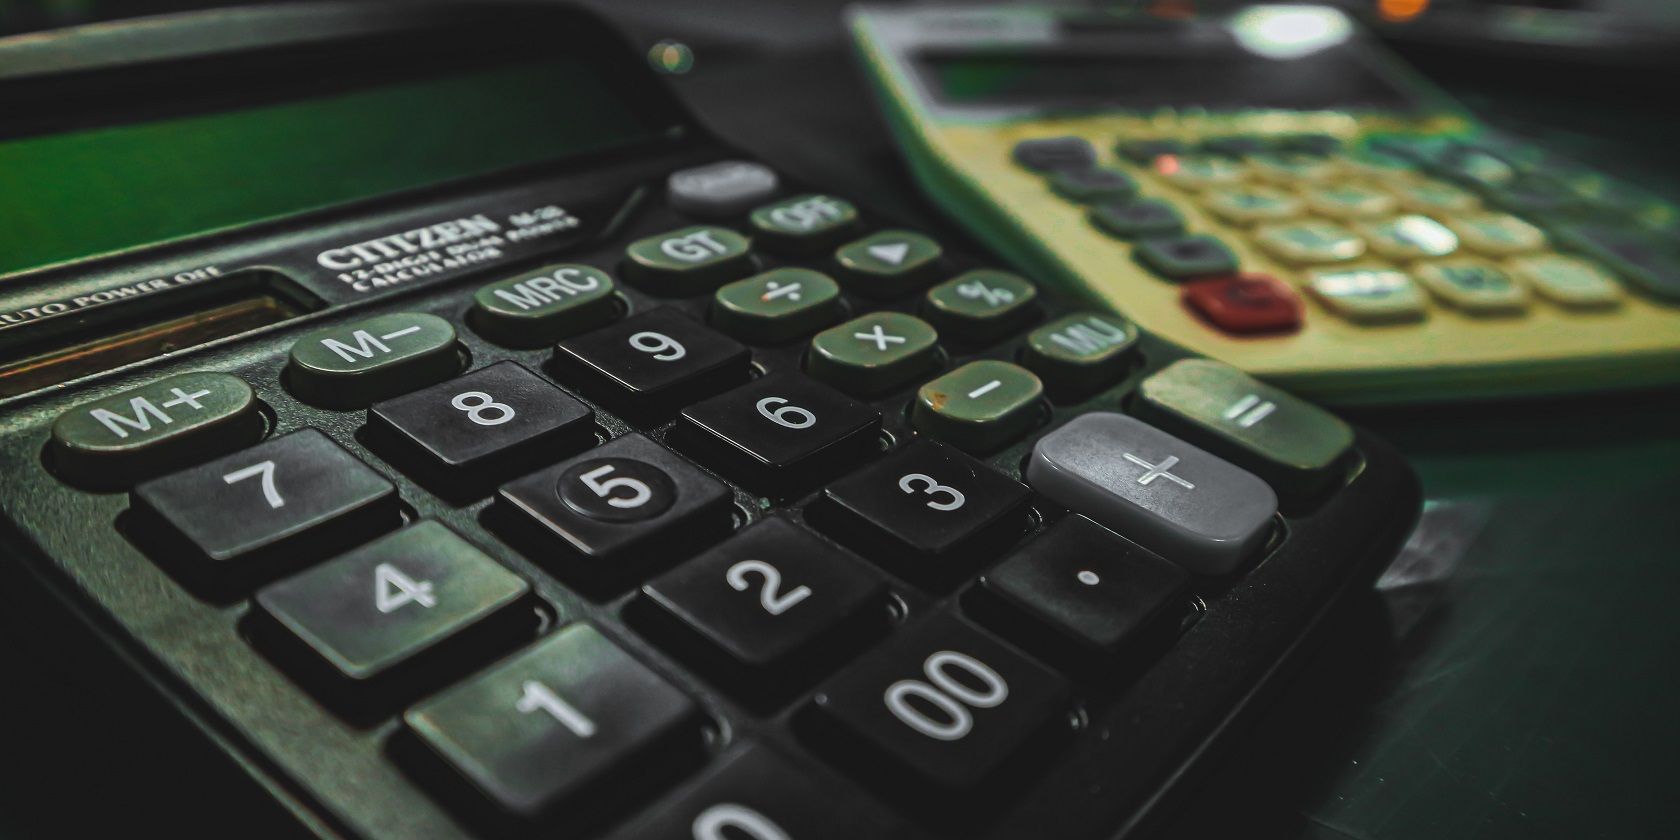 Two calculators on a desk